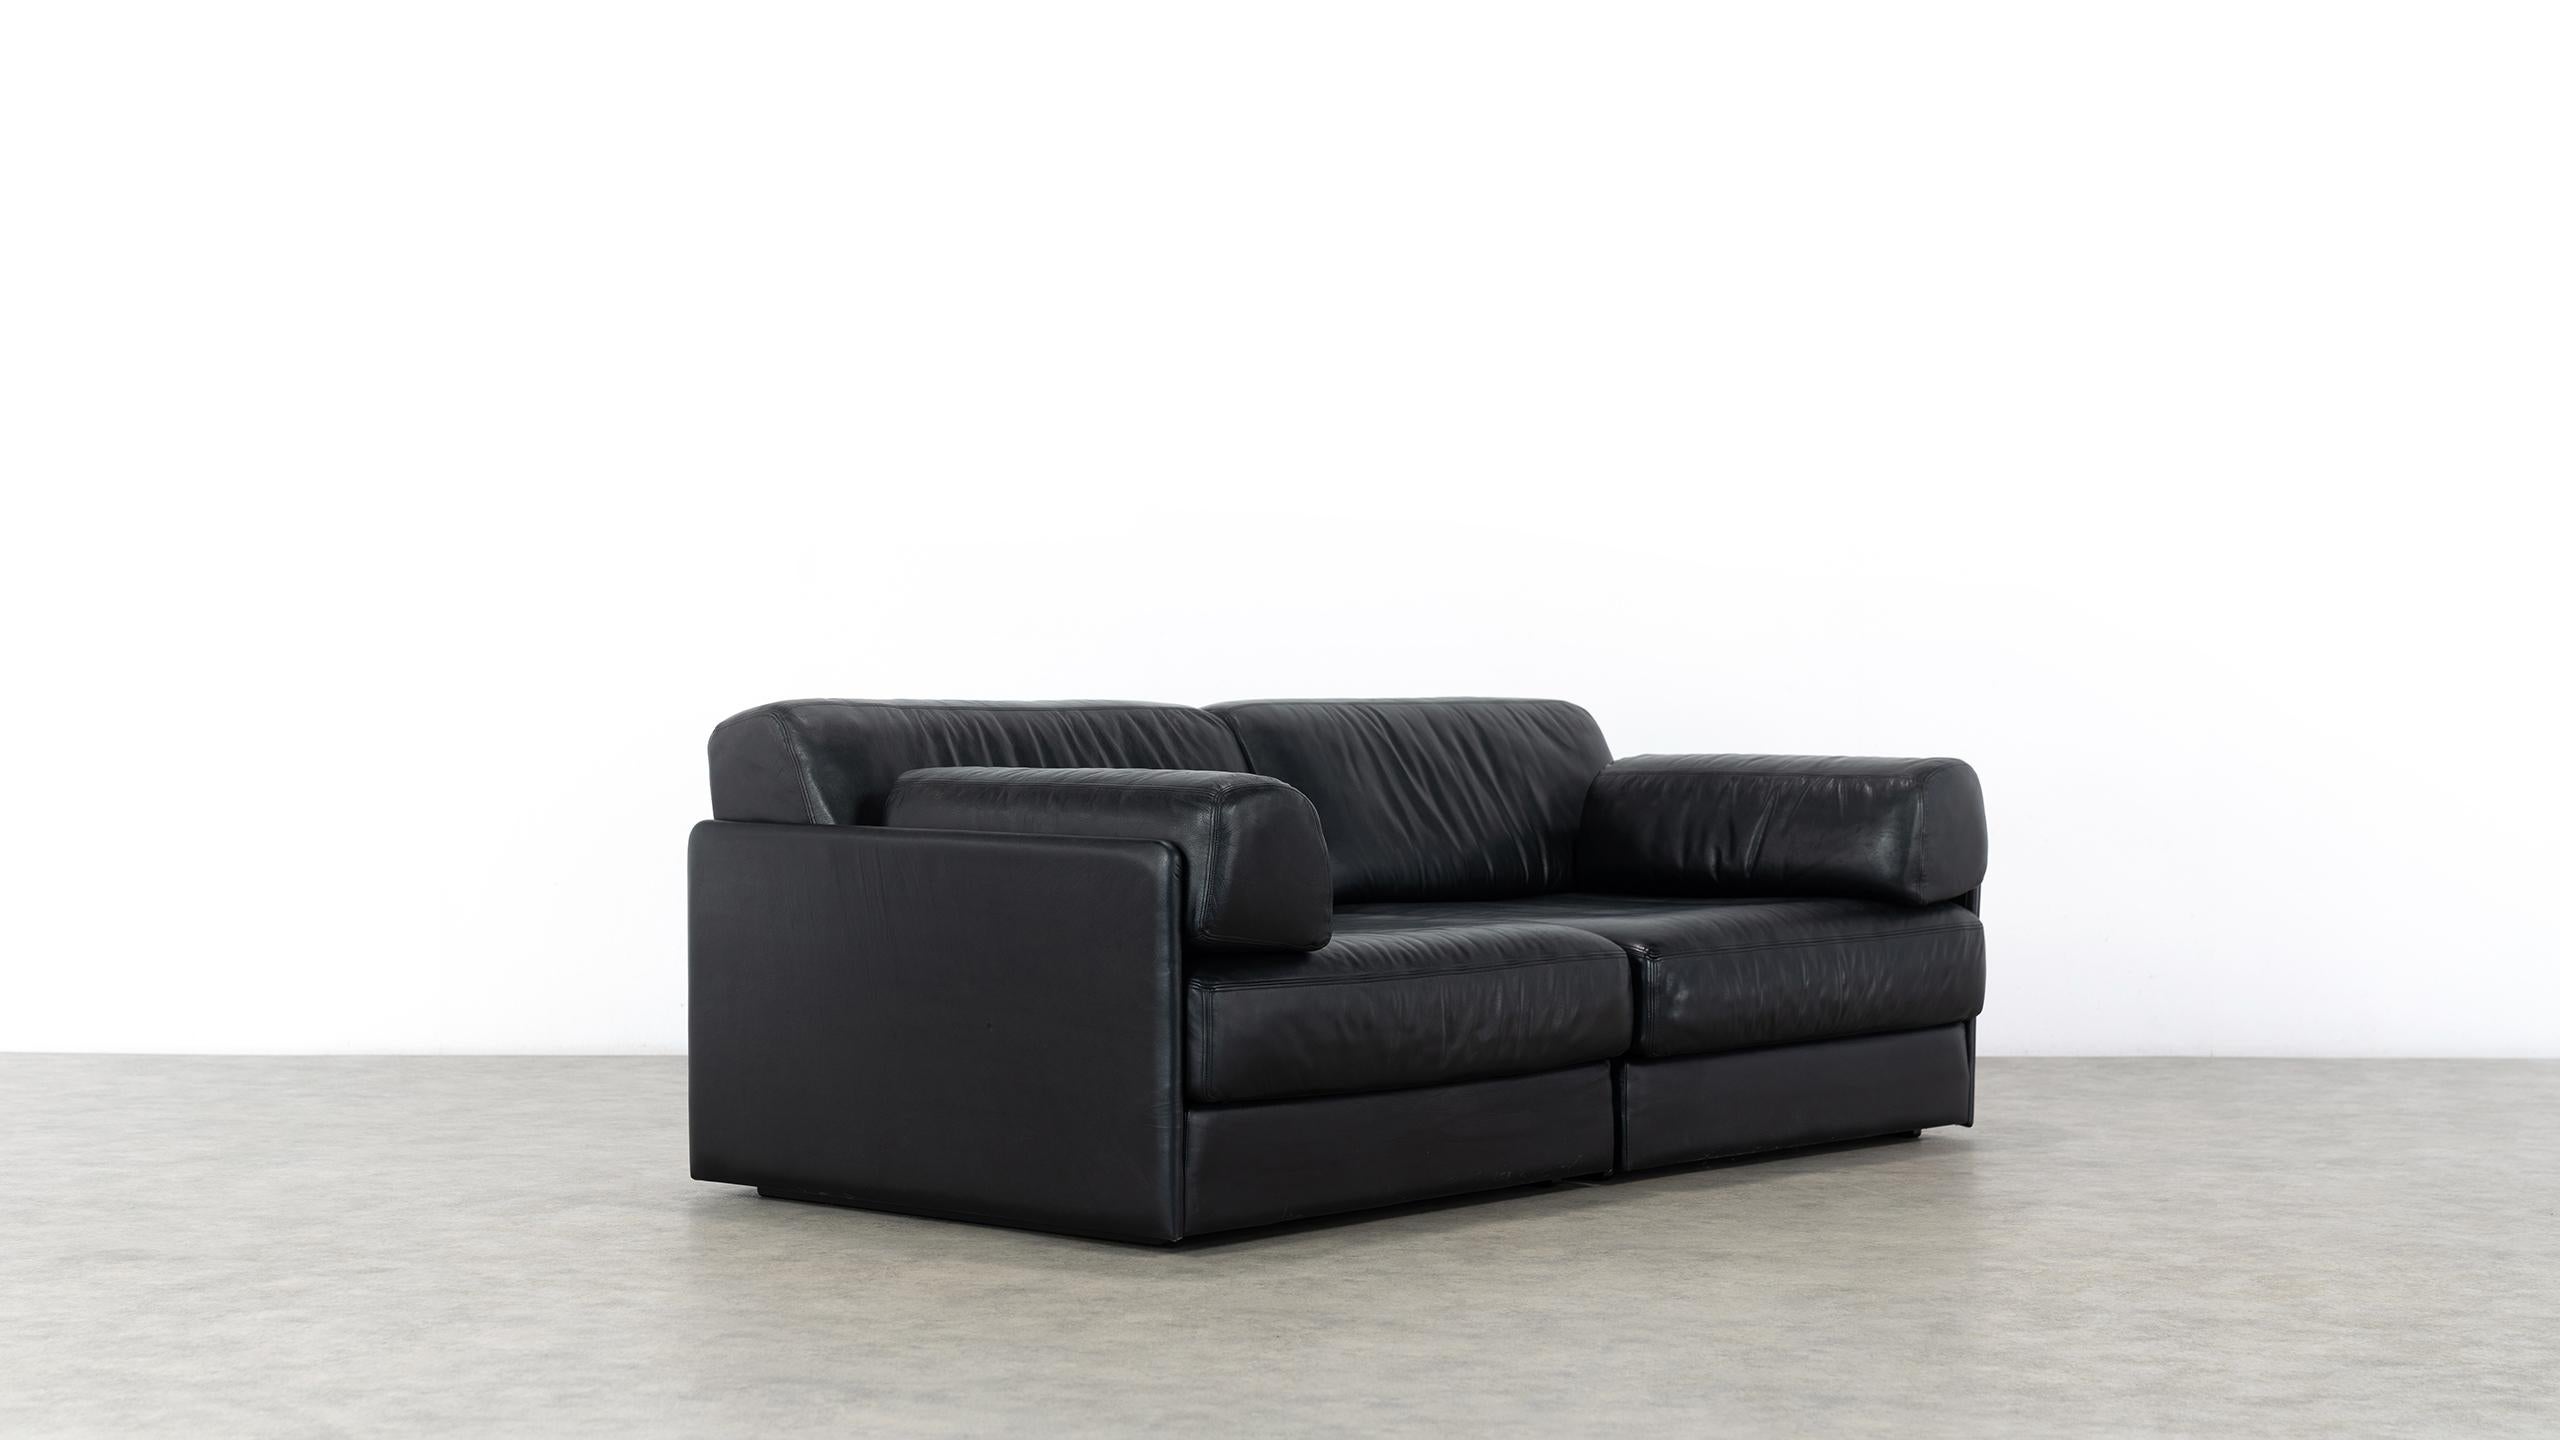 De Sede Ds76, Sofa & Daybed in Black Leather, 1972 by De Sede Design Team 3